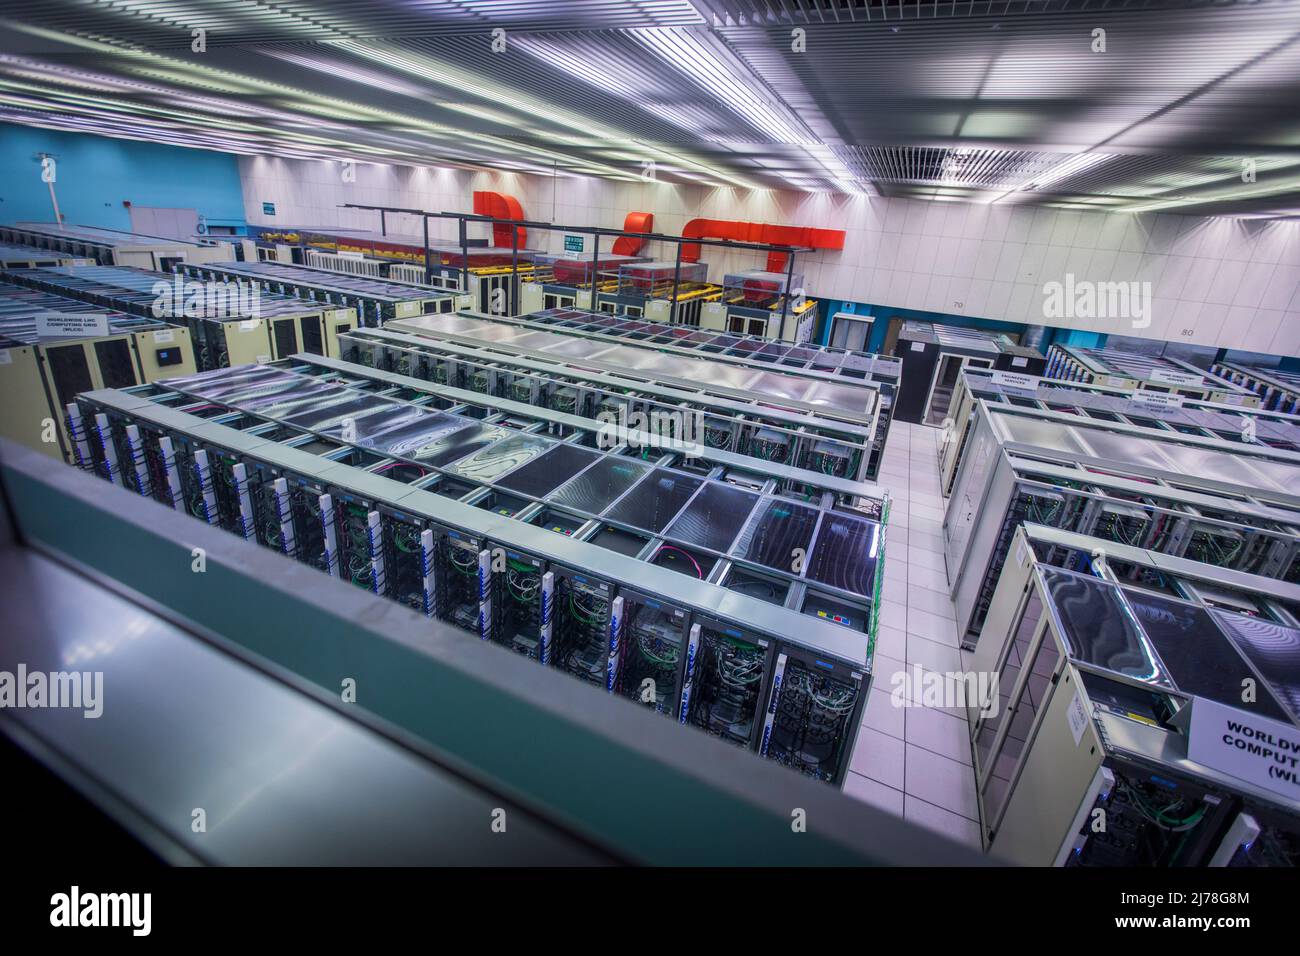 Parti del data center che elaborano tutti gli esperimenti e i dati richiesti al CERN. Gli scienziati e gli ingegneri del CERN si stanno preparando per il prossimo grande capitolo della storia del più grande laboratorio di ricerca del mondo. Sono in corso piani per costruire un altro collider di particelle quattro volte più grande dell'esistente LHC - Large Hadron Collider. Foto Stock